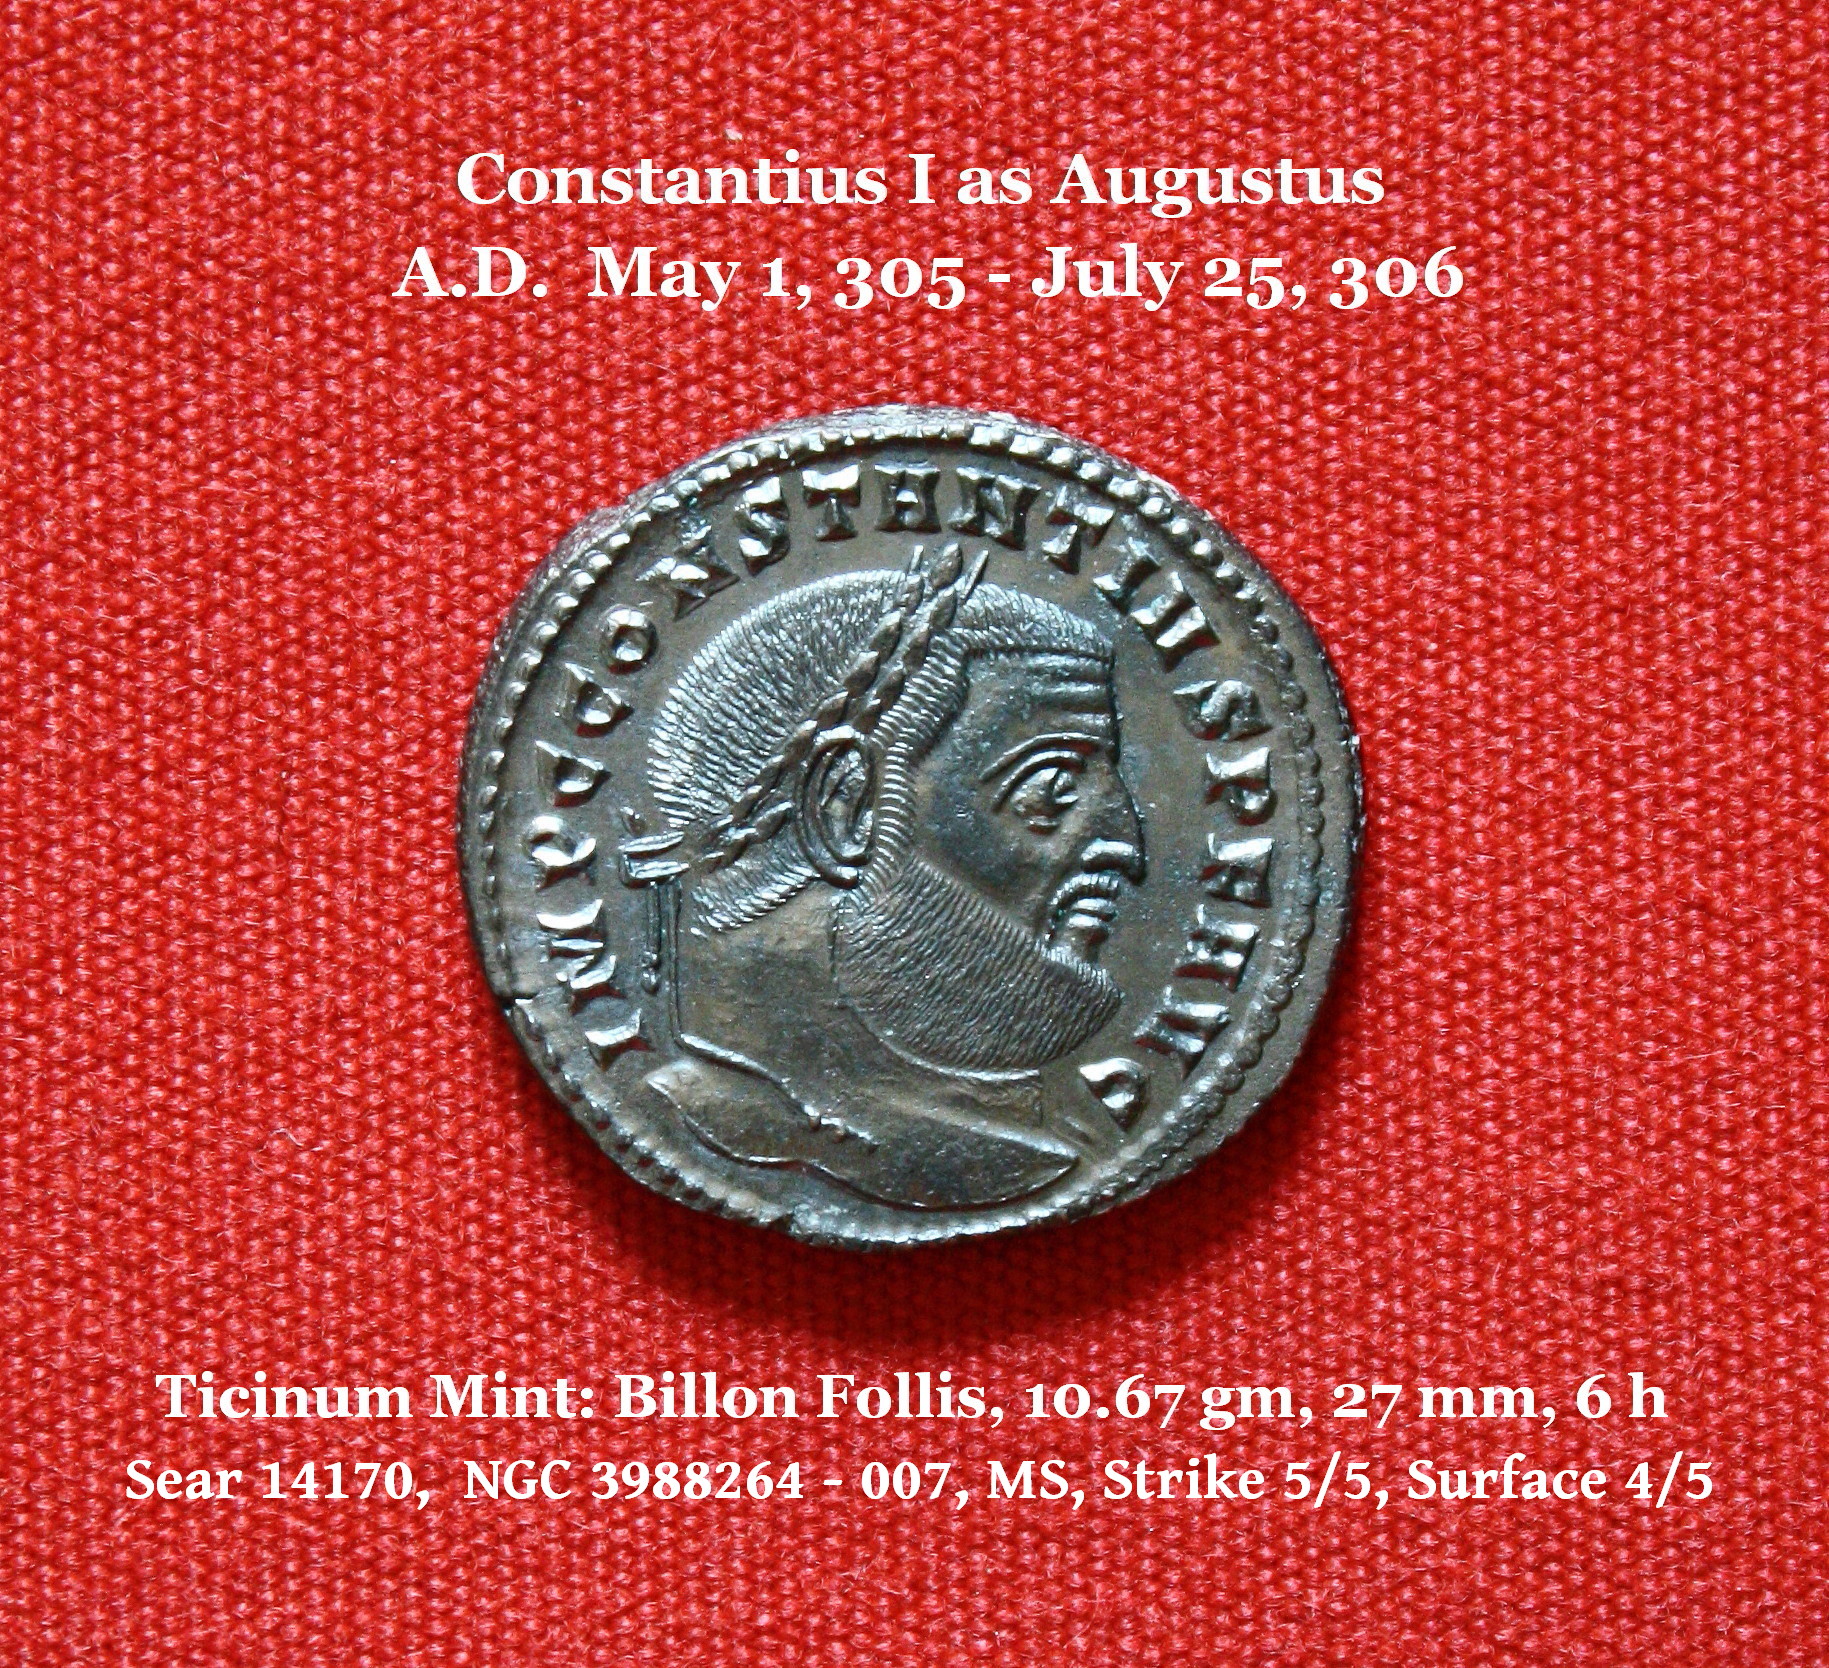 Probus, 276-282 AD, Silvered Antoninianus, Fides Militum, struck